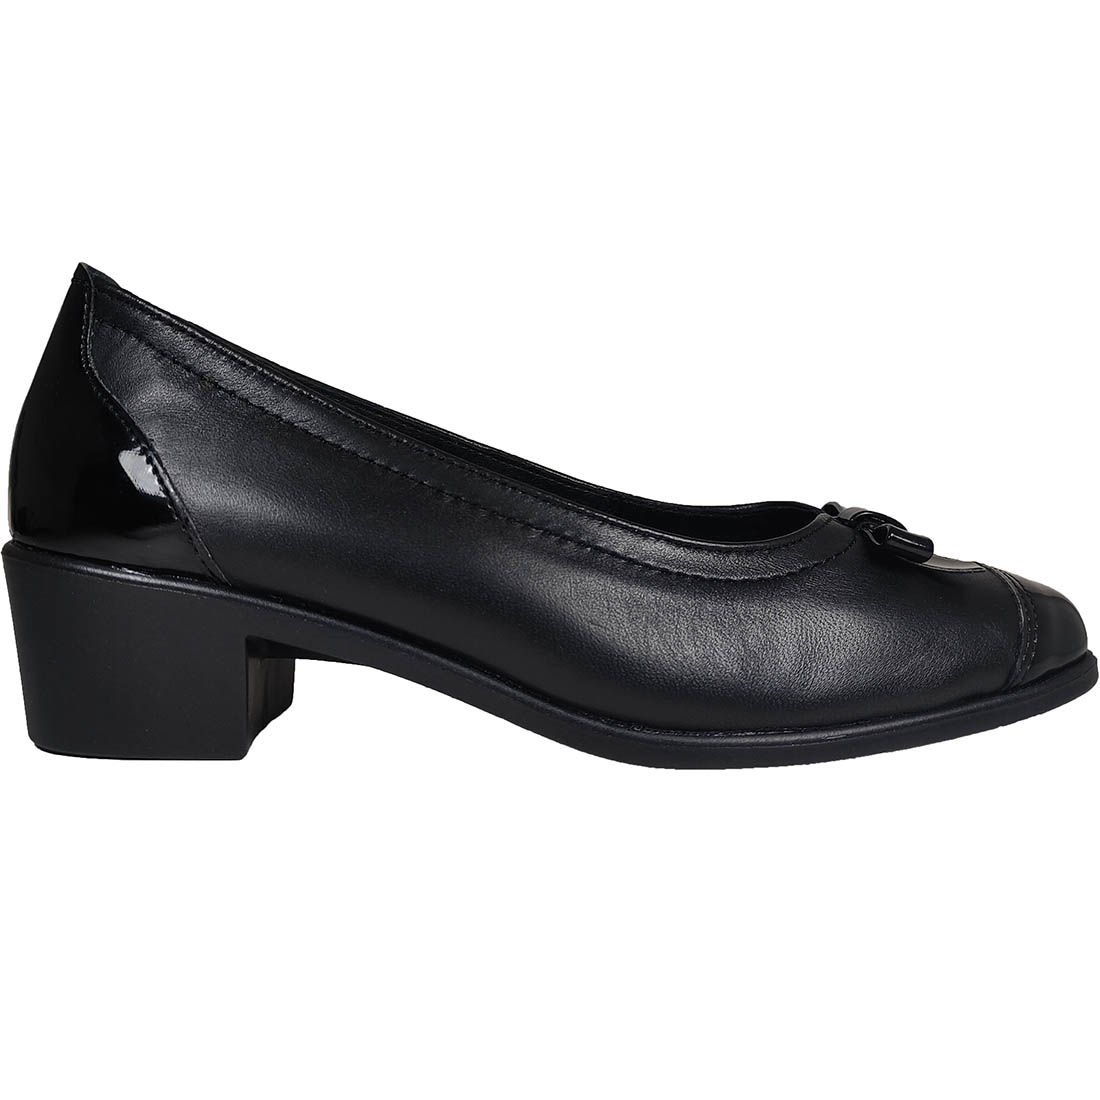 Dafni 440 Black Leather Heels